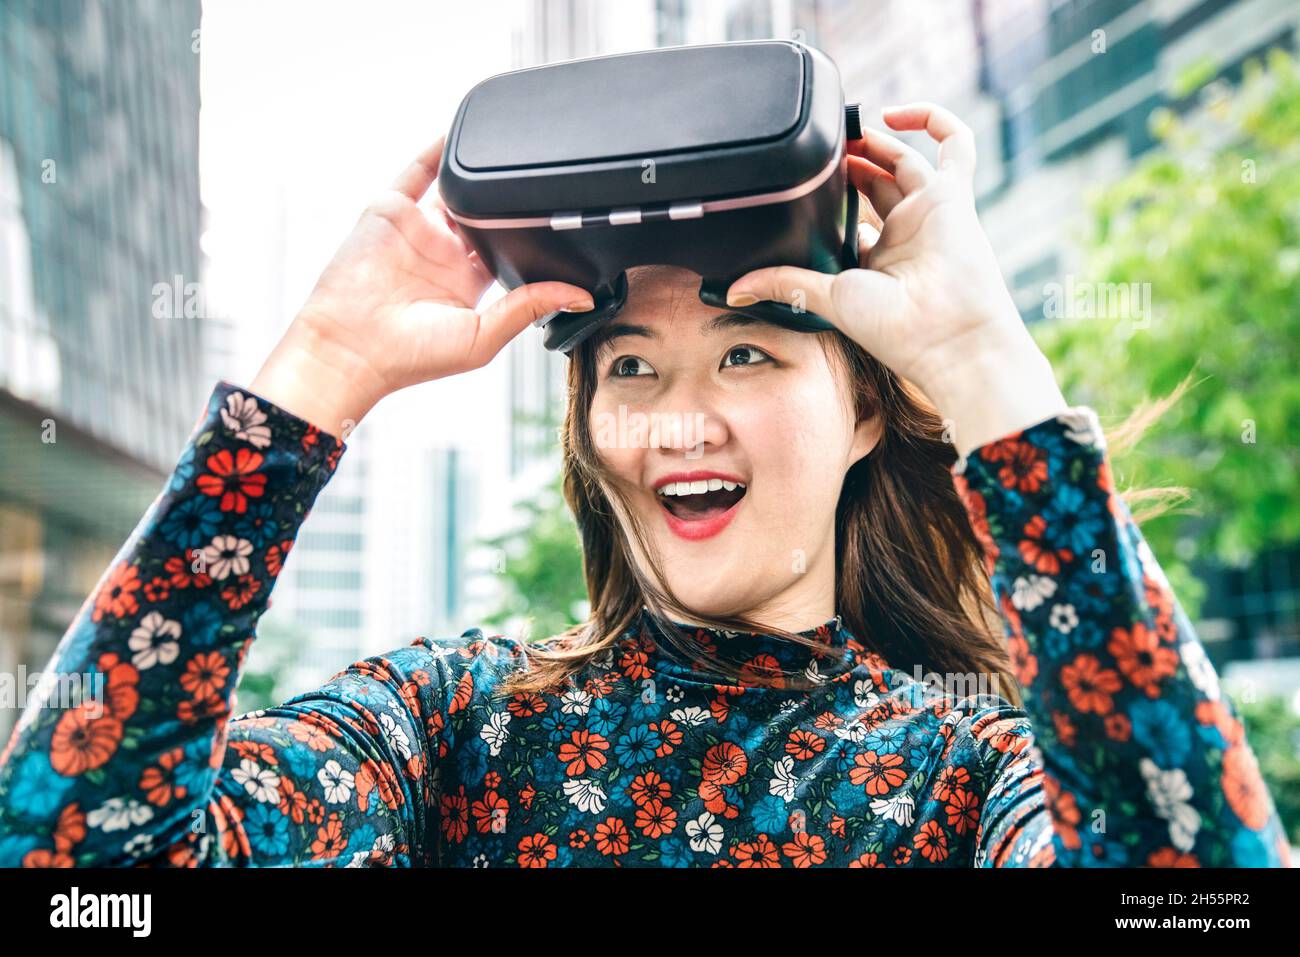 Junge staunende Frau nach vr Brillen Erfahrung - Virtual Reality und Wearable Tech-Konzept mit Mädchen Spaß mit Headset Brille Maske Stockfoto